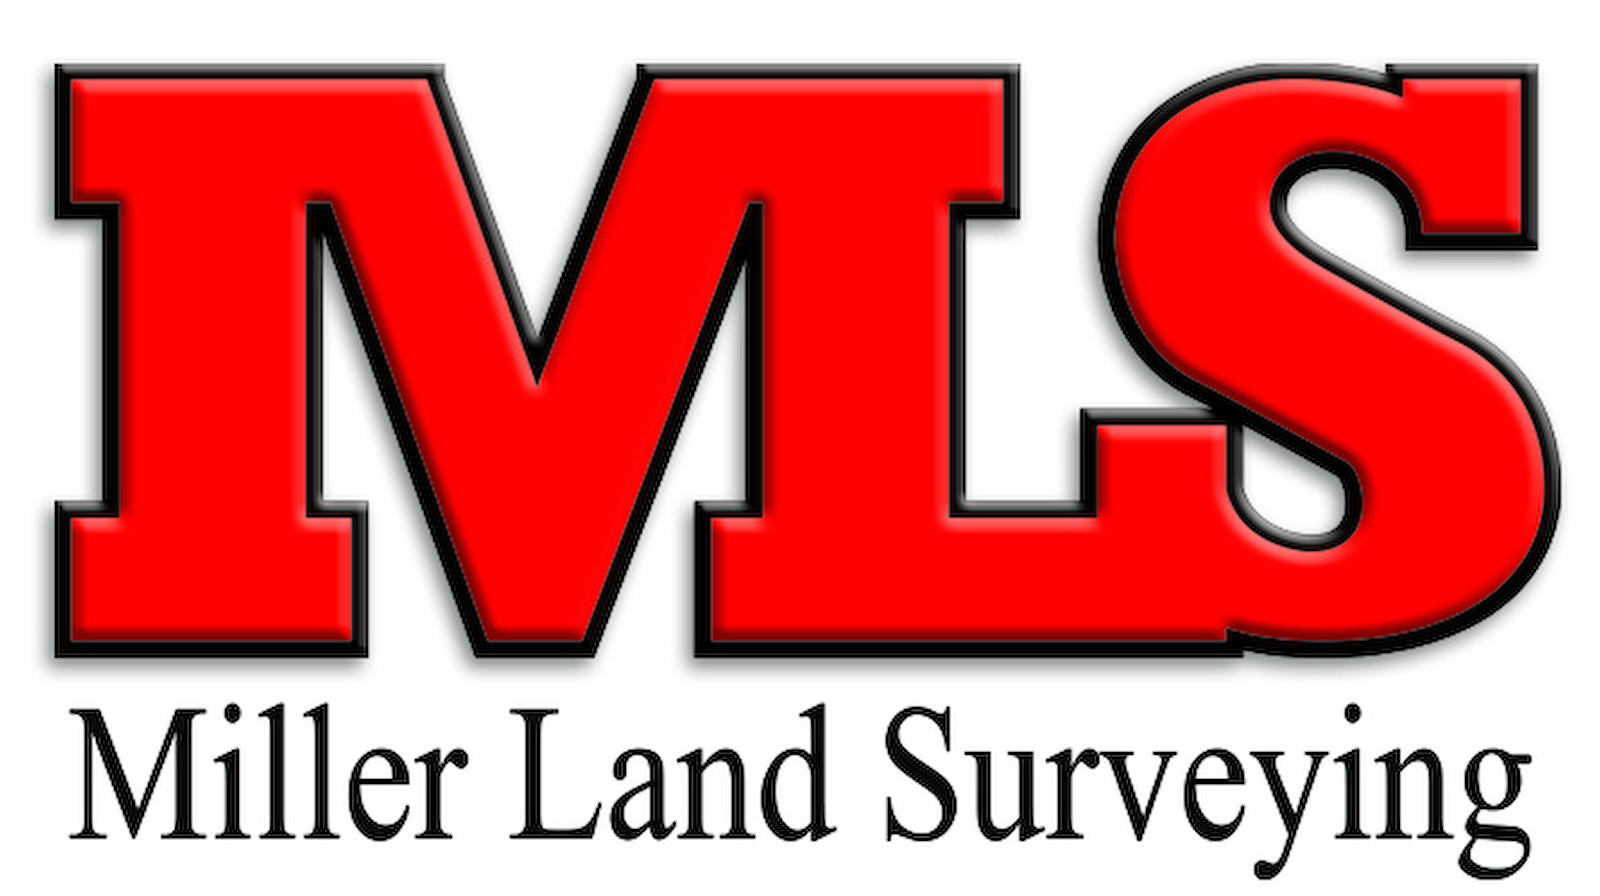 Miller Land Surveying